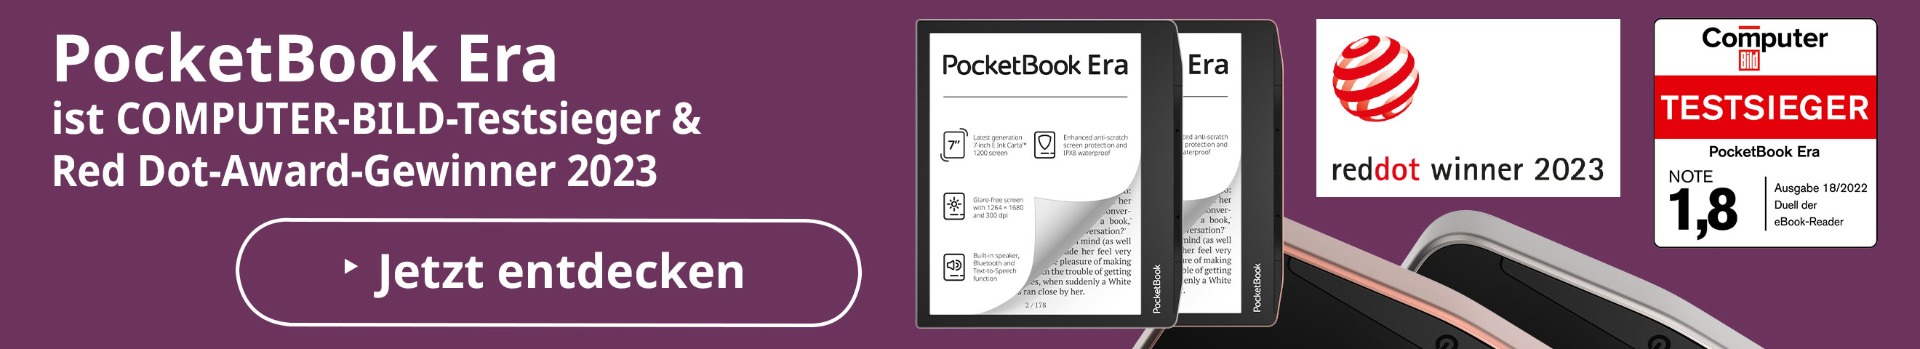 PocketBook Era - Der Testsieger